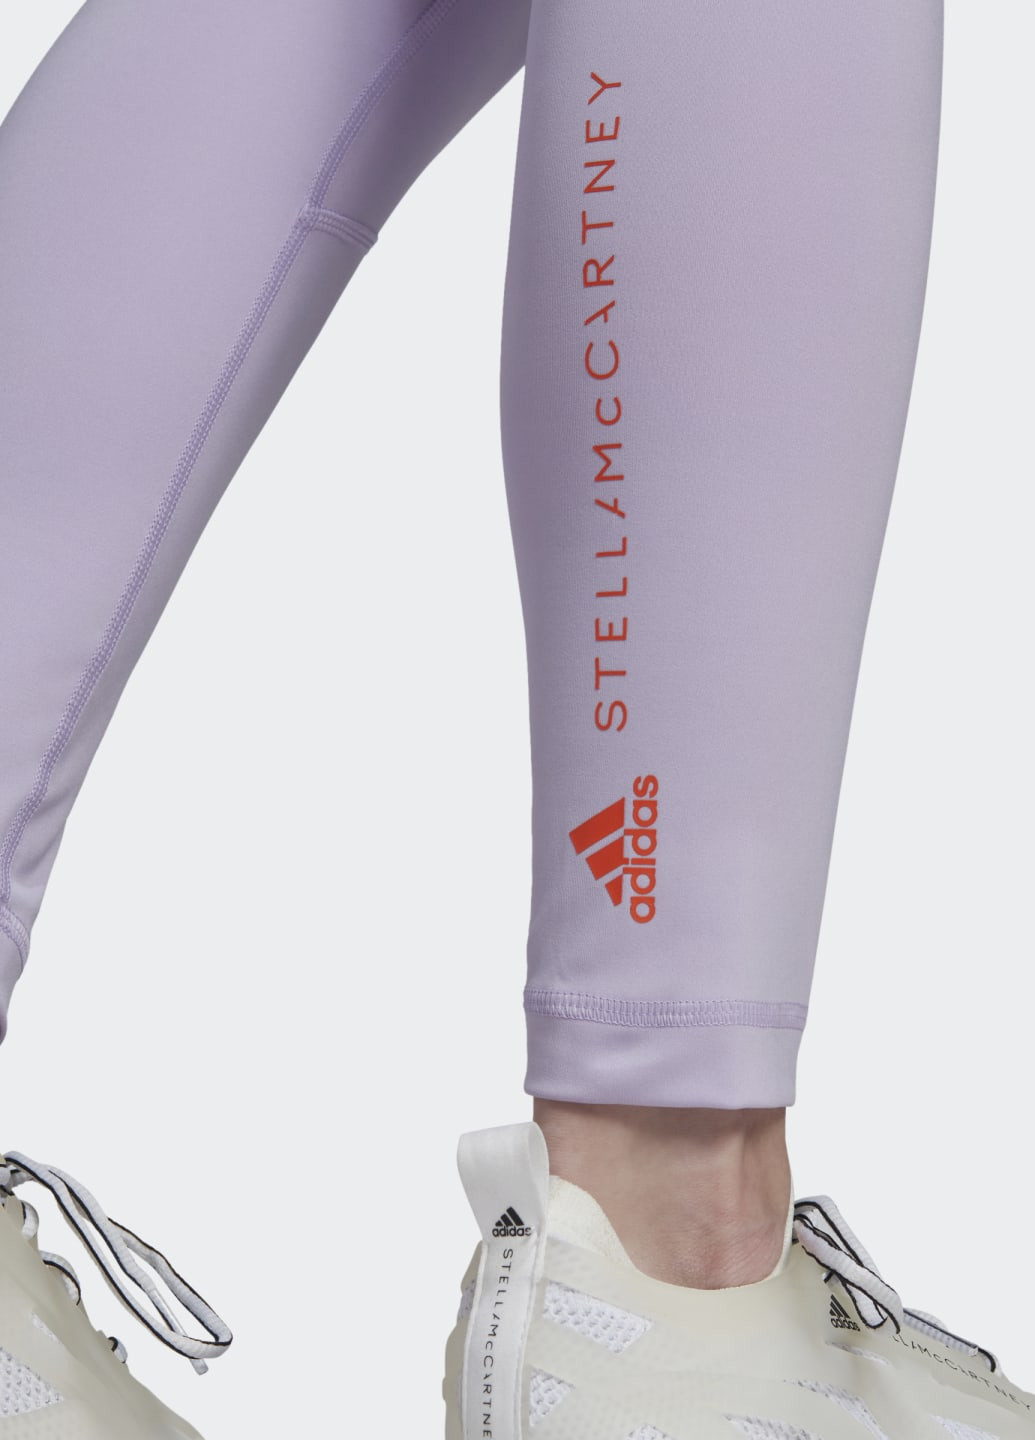 Фиолетовые демисезонные леггинсы для фитнеса by stella mccartney truepurpose adidas